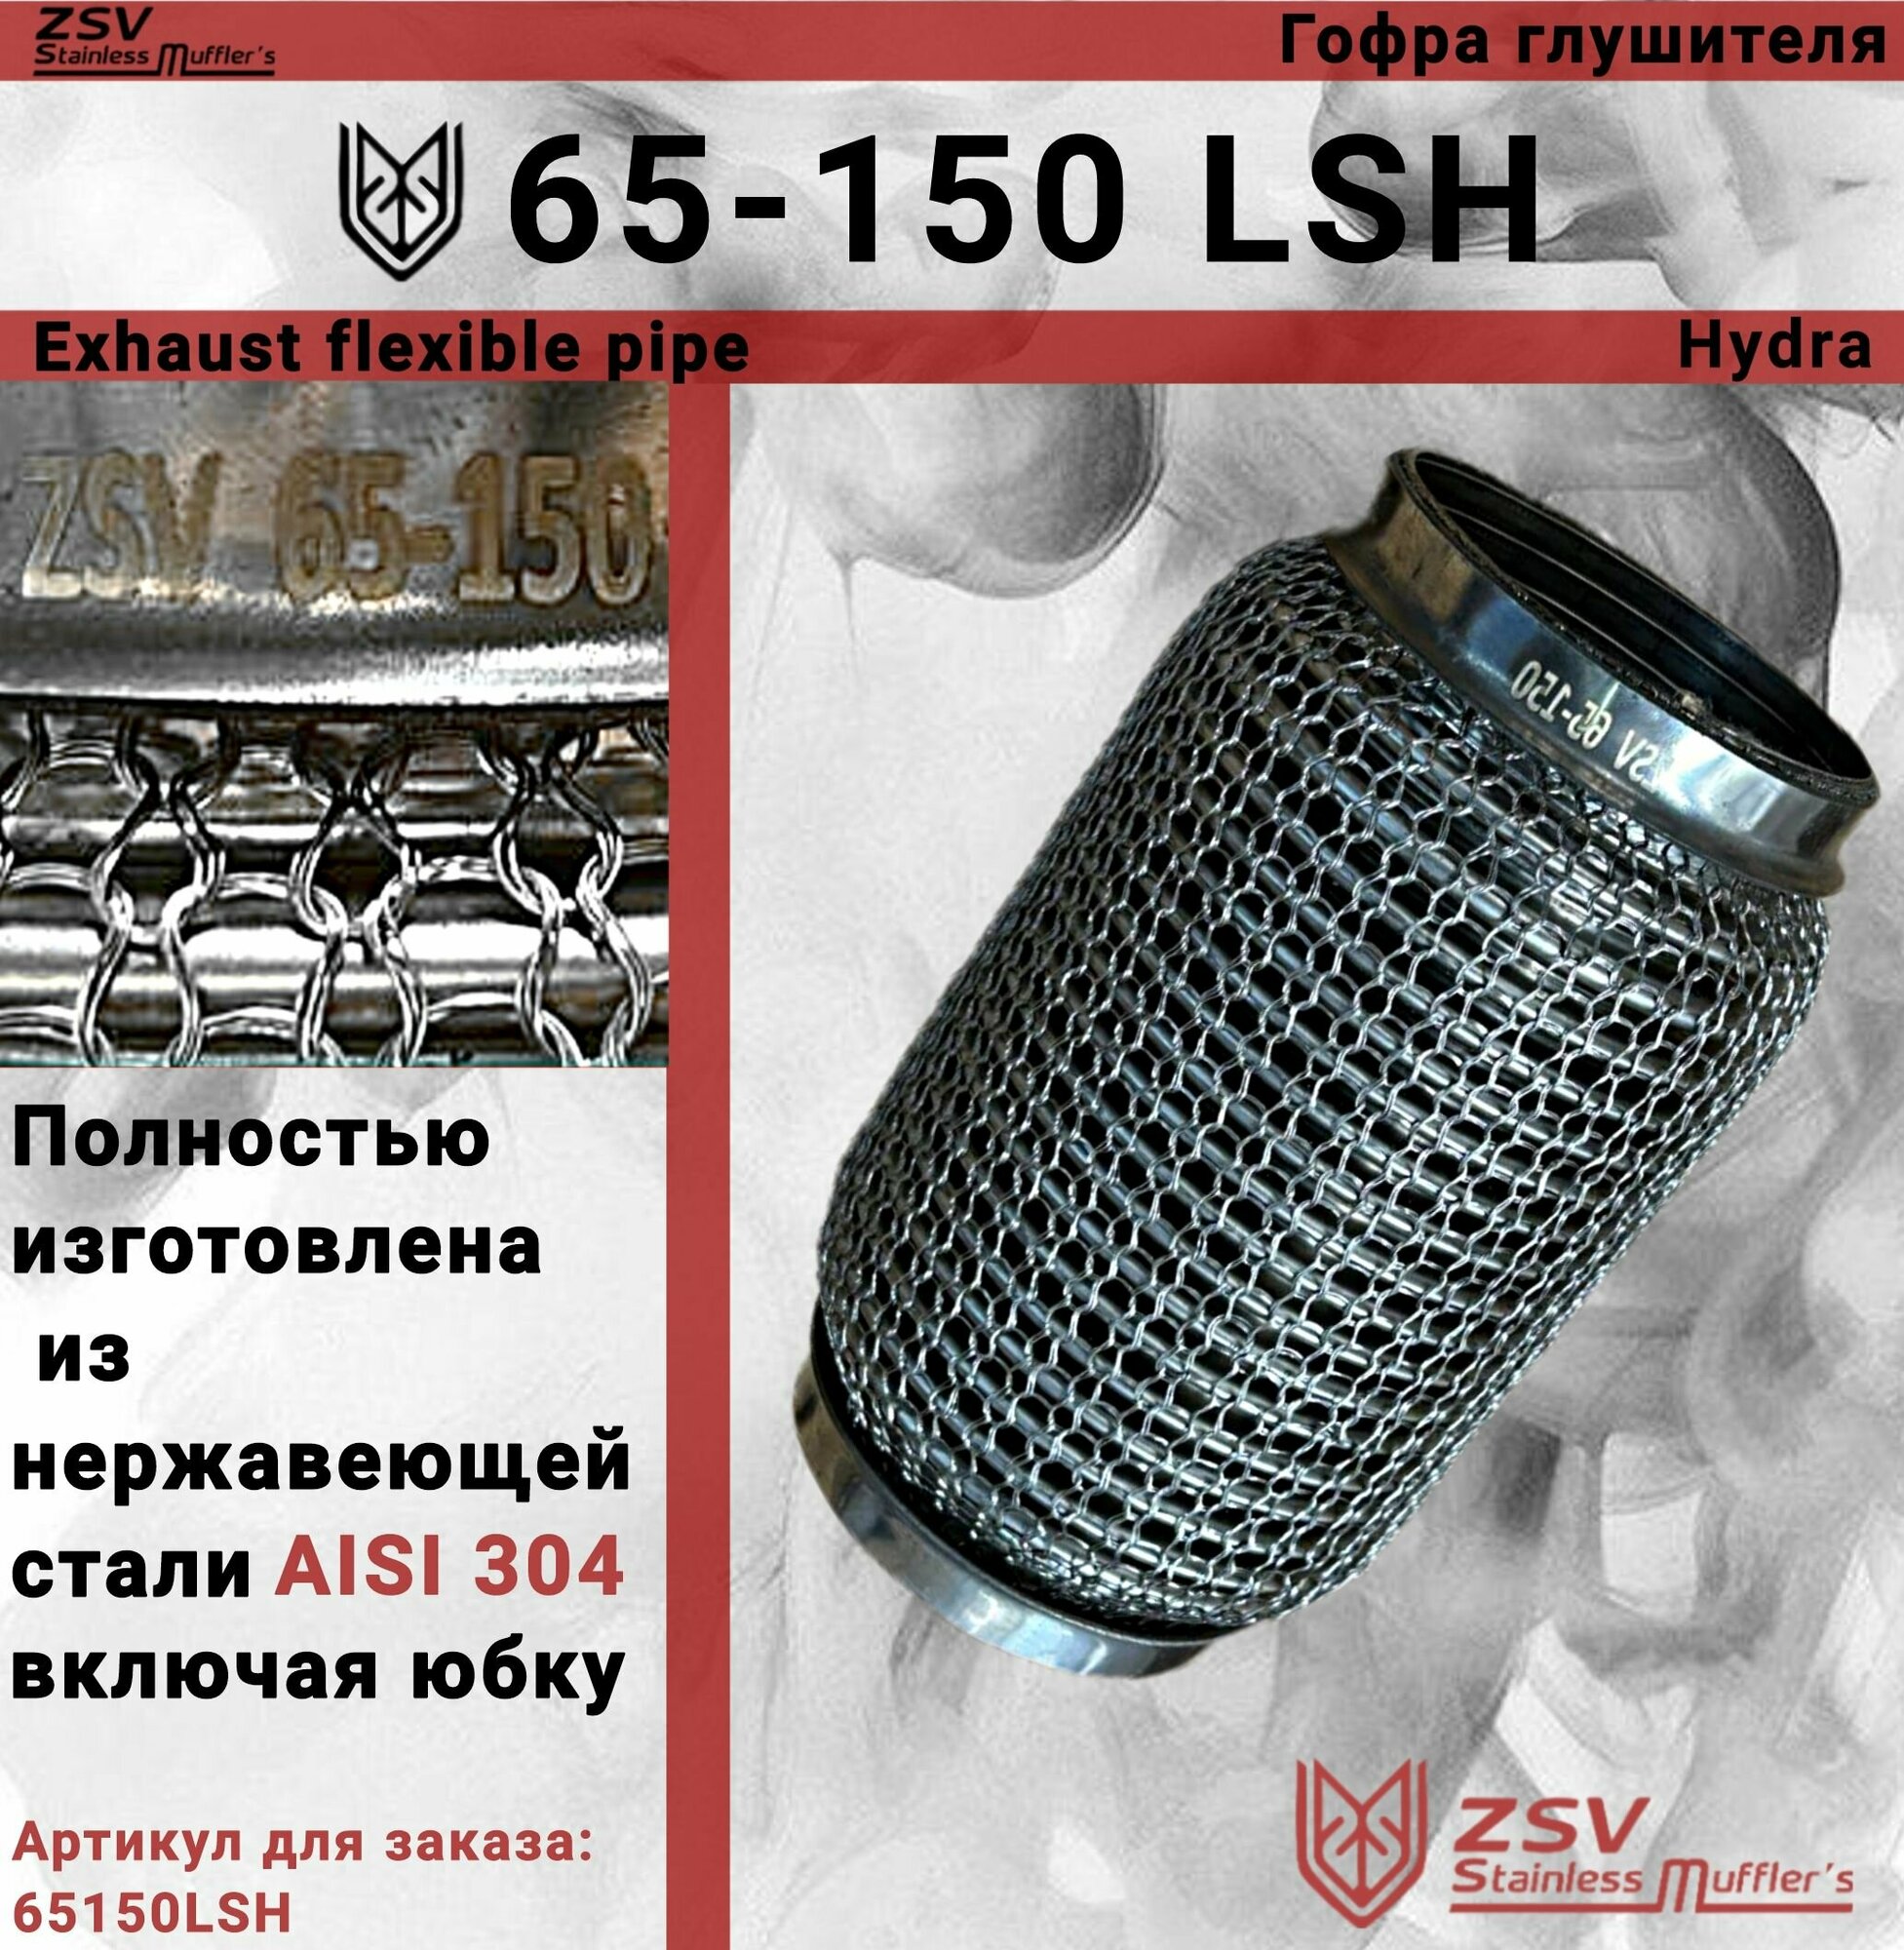 Гофра глушителя Hydra type 65-150 Улучшенная! полностью изготовлена из нержавеющей стали AISI 304